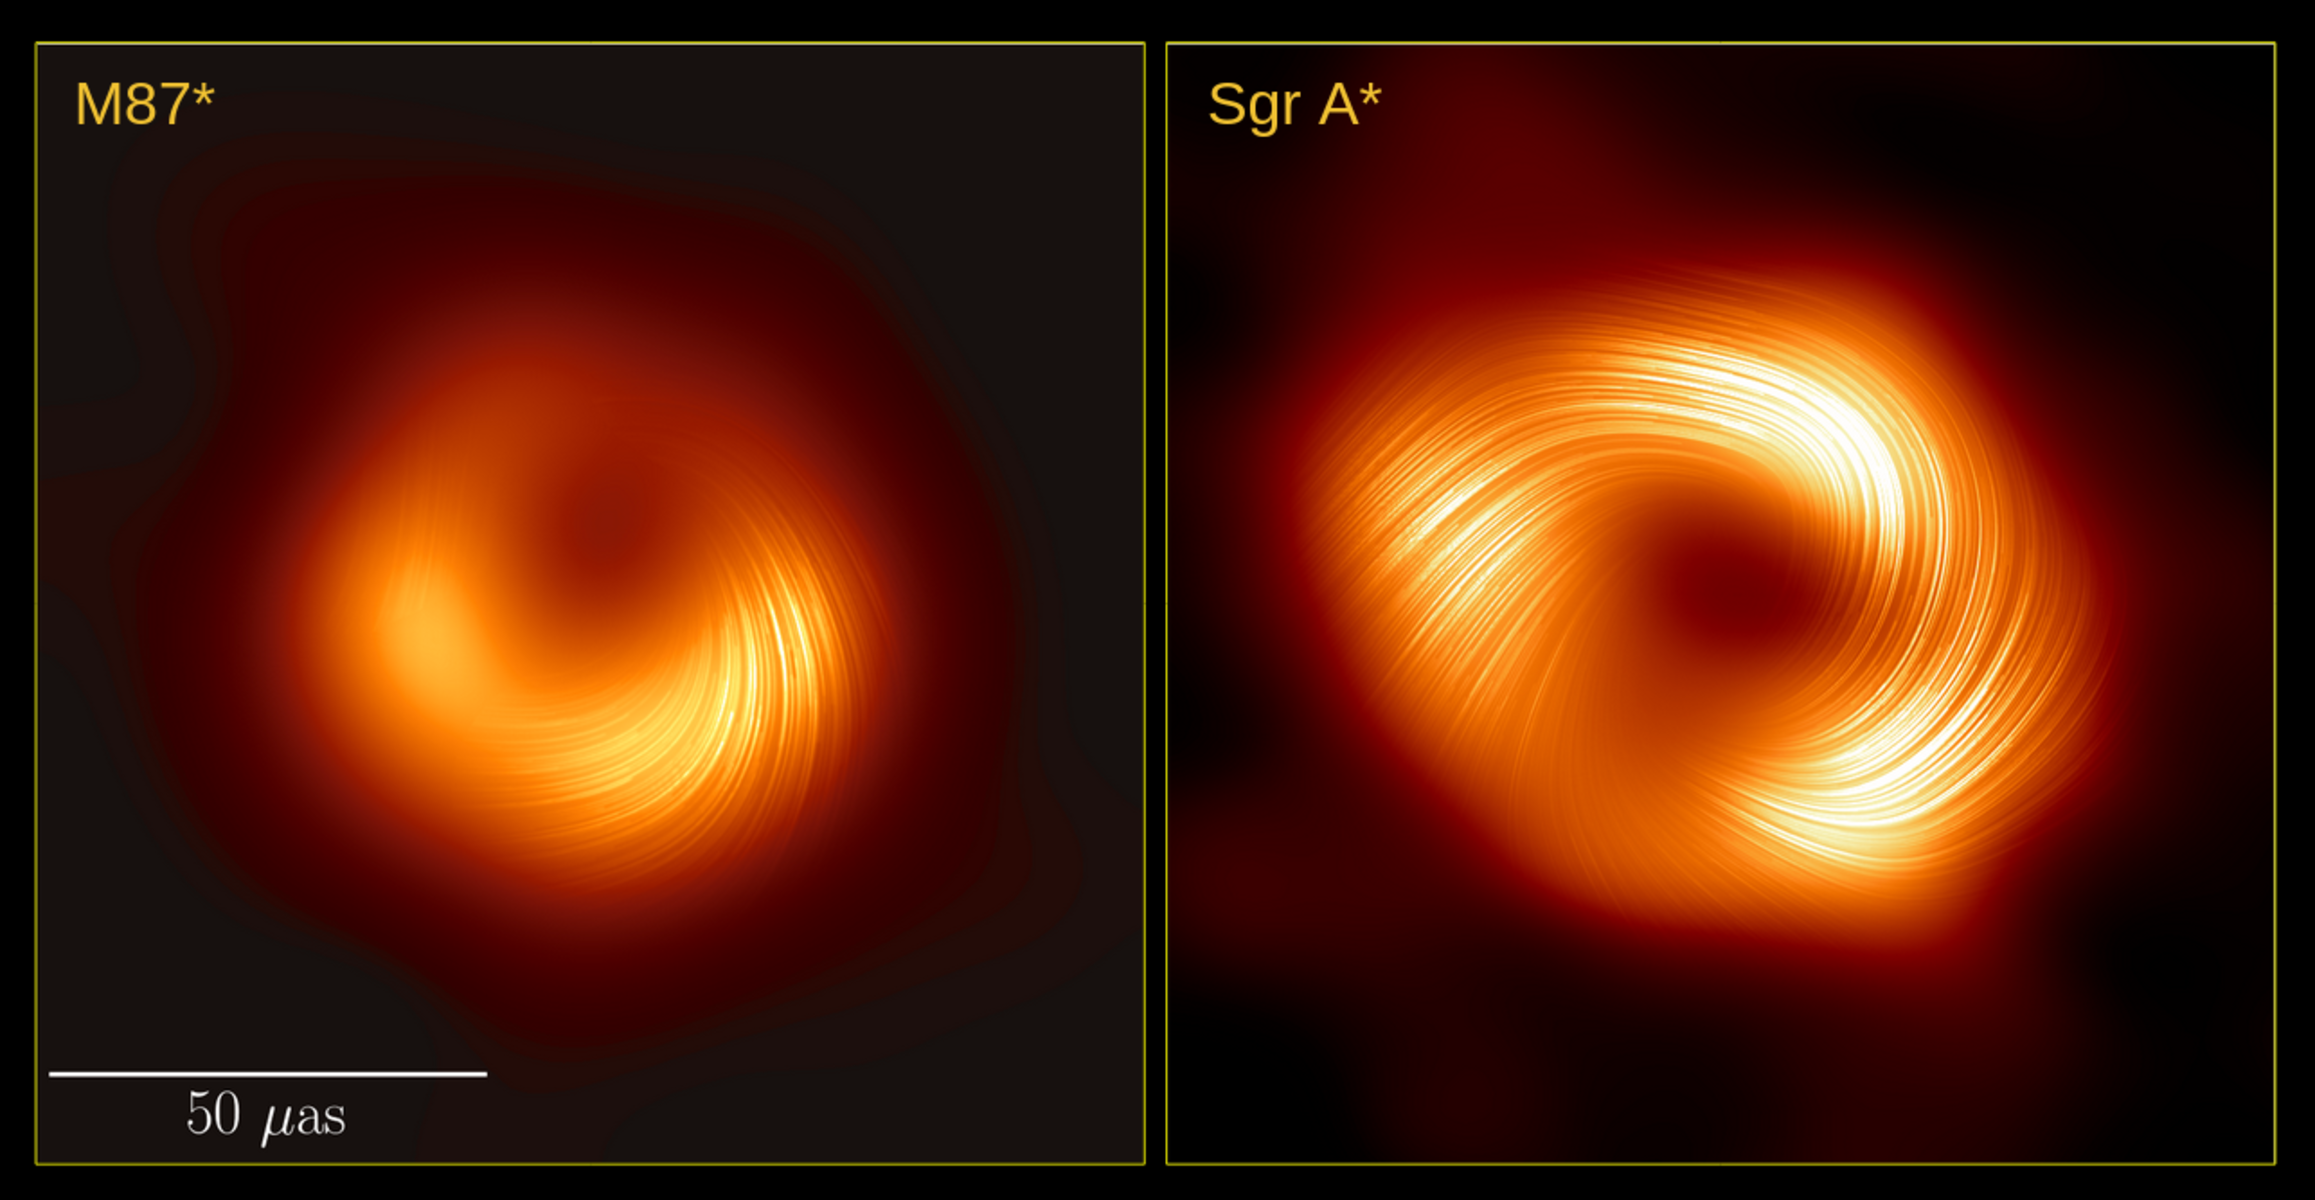 čierna diera, M87, Sagittarius A